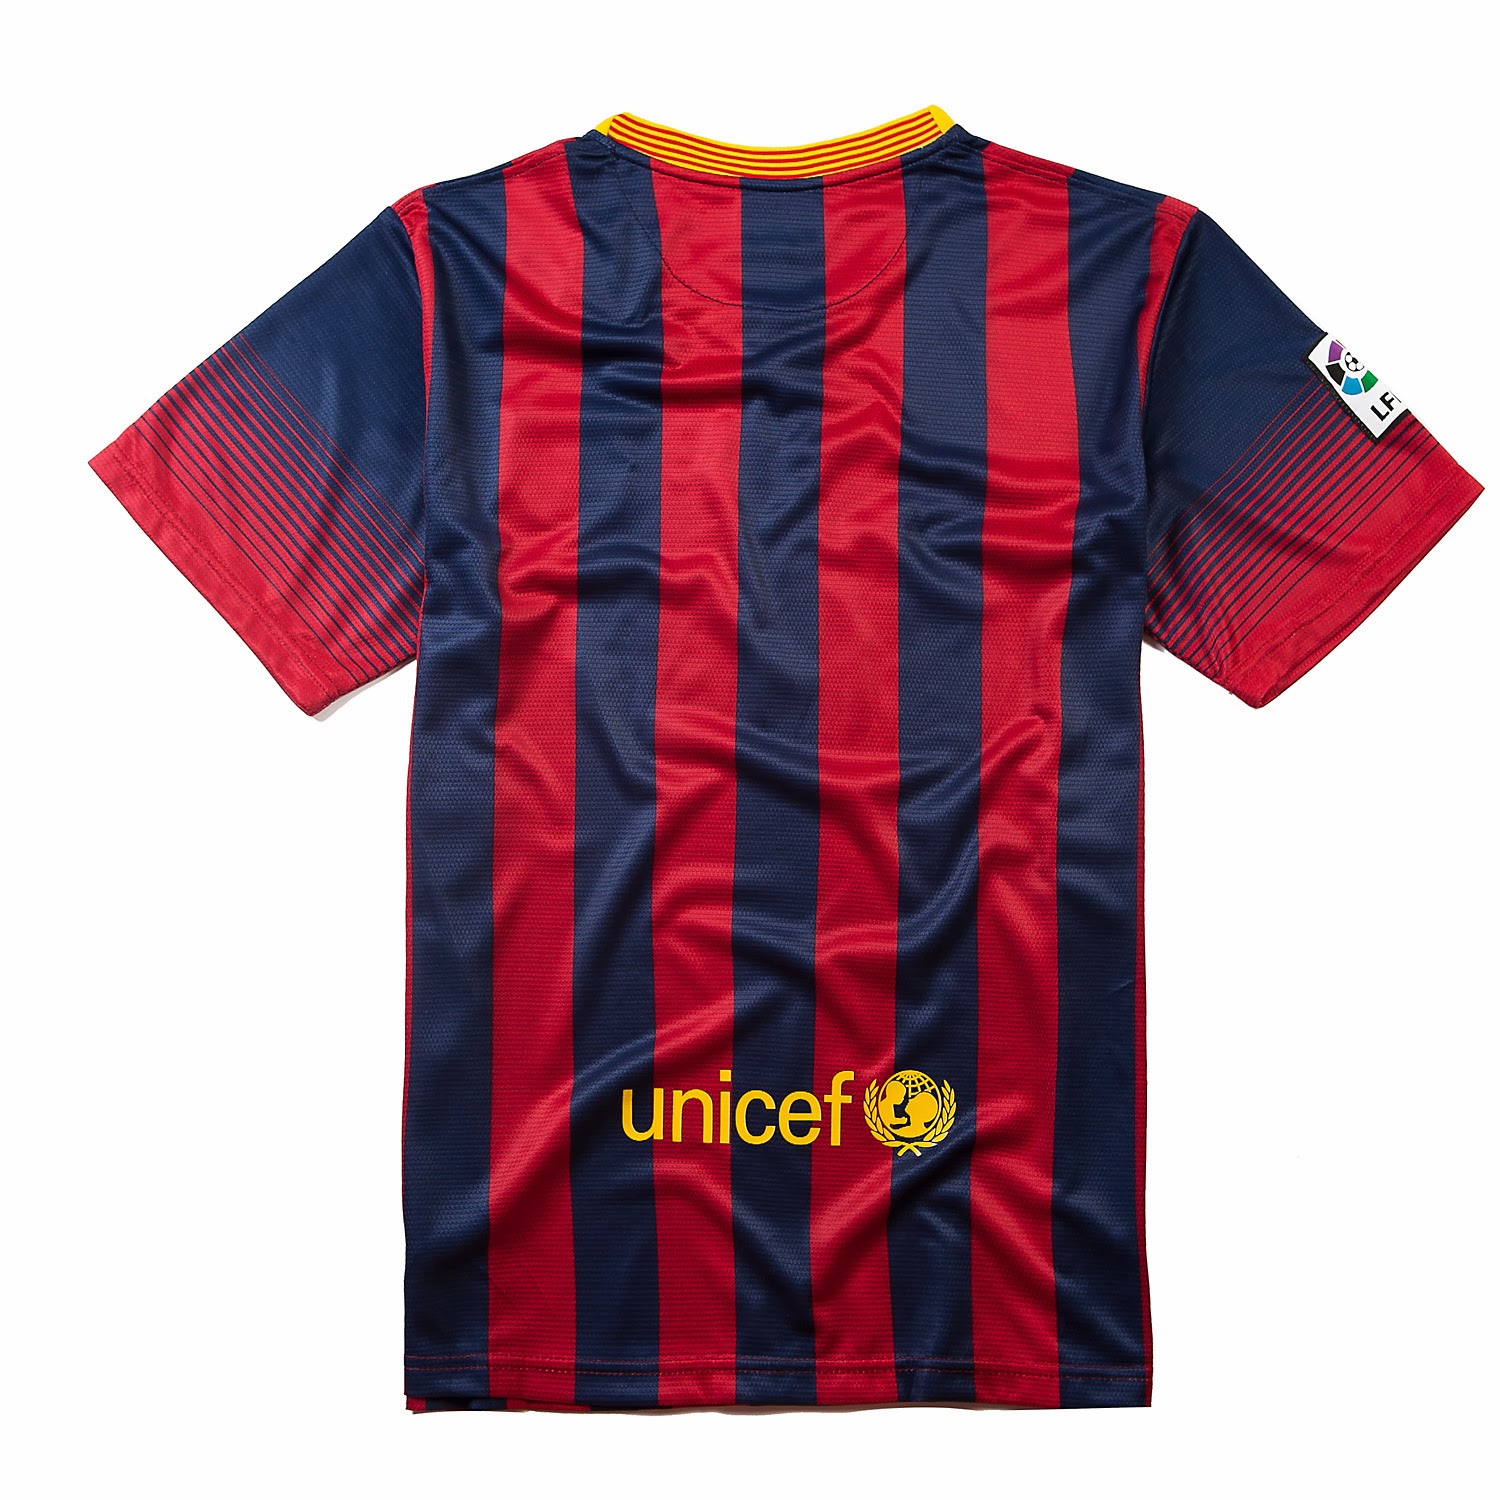 Equipaciones de futbol baratas 2015 online: nueva camisetas de futbol barcelona 2013-2014 baratas